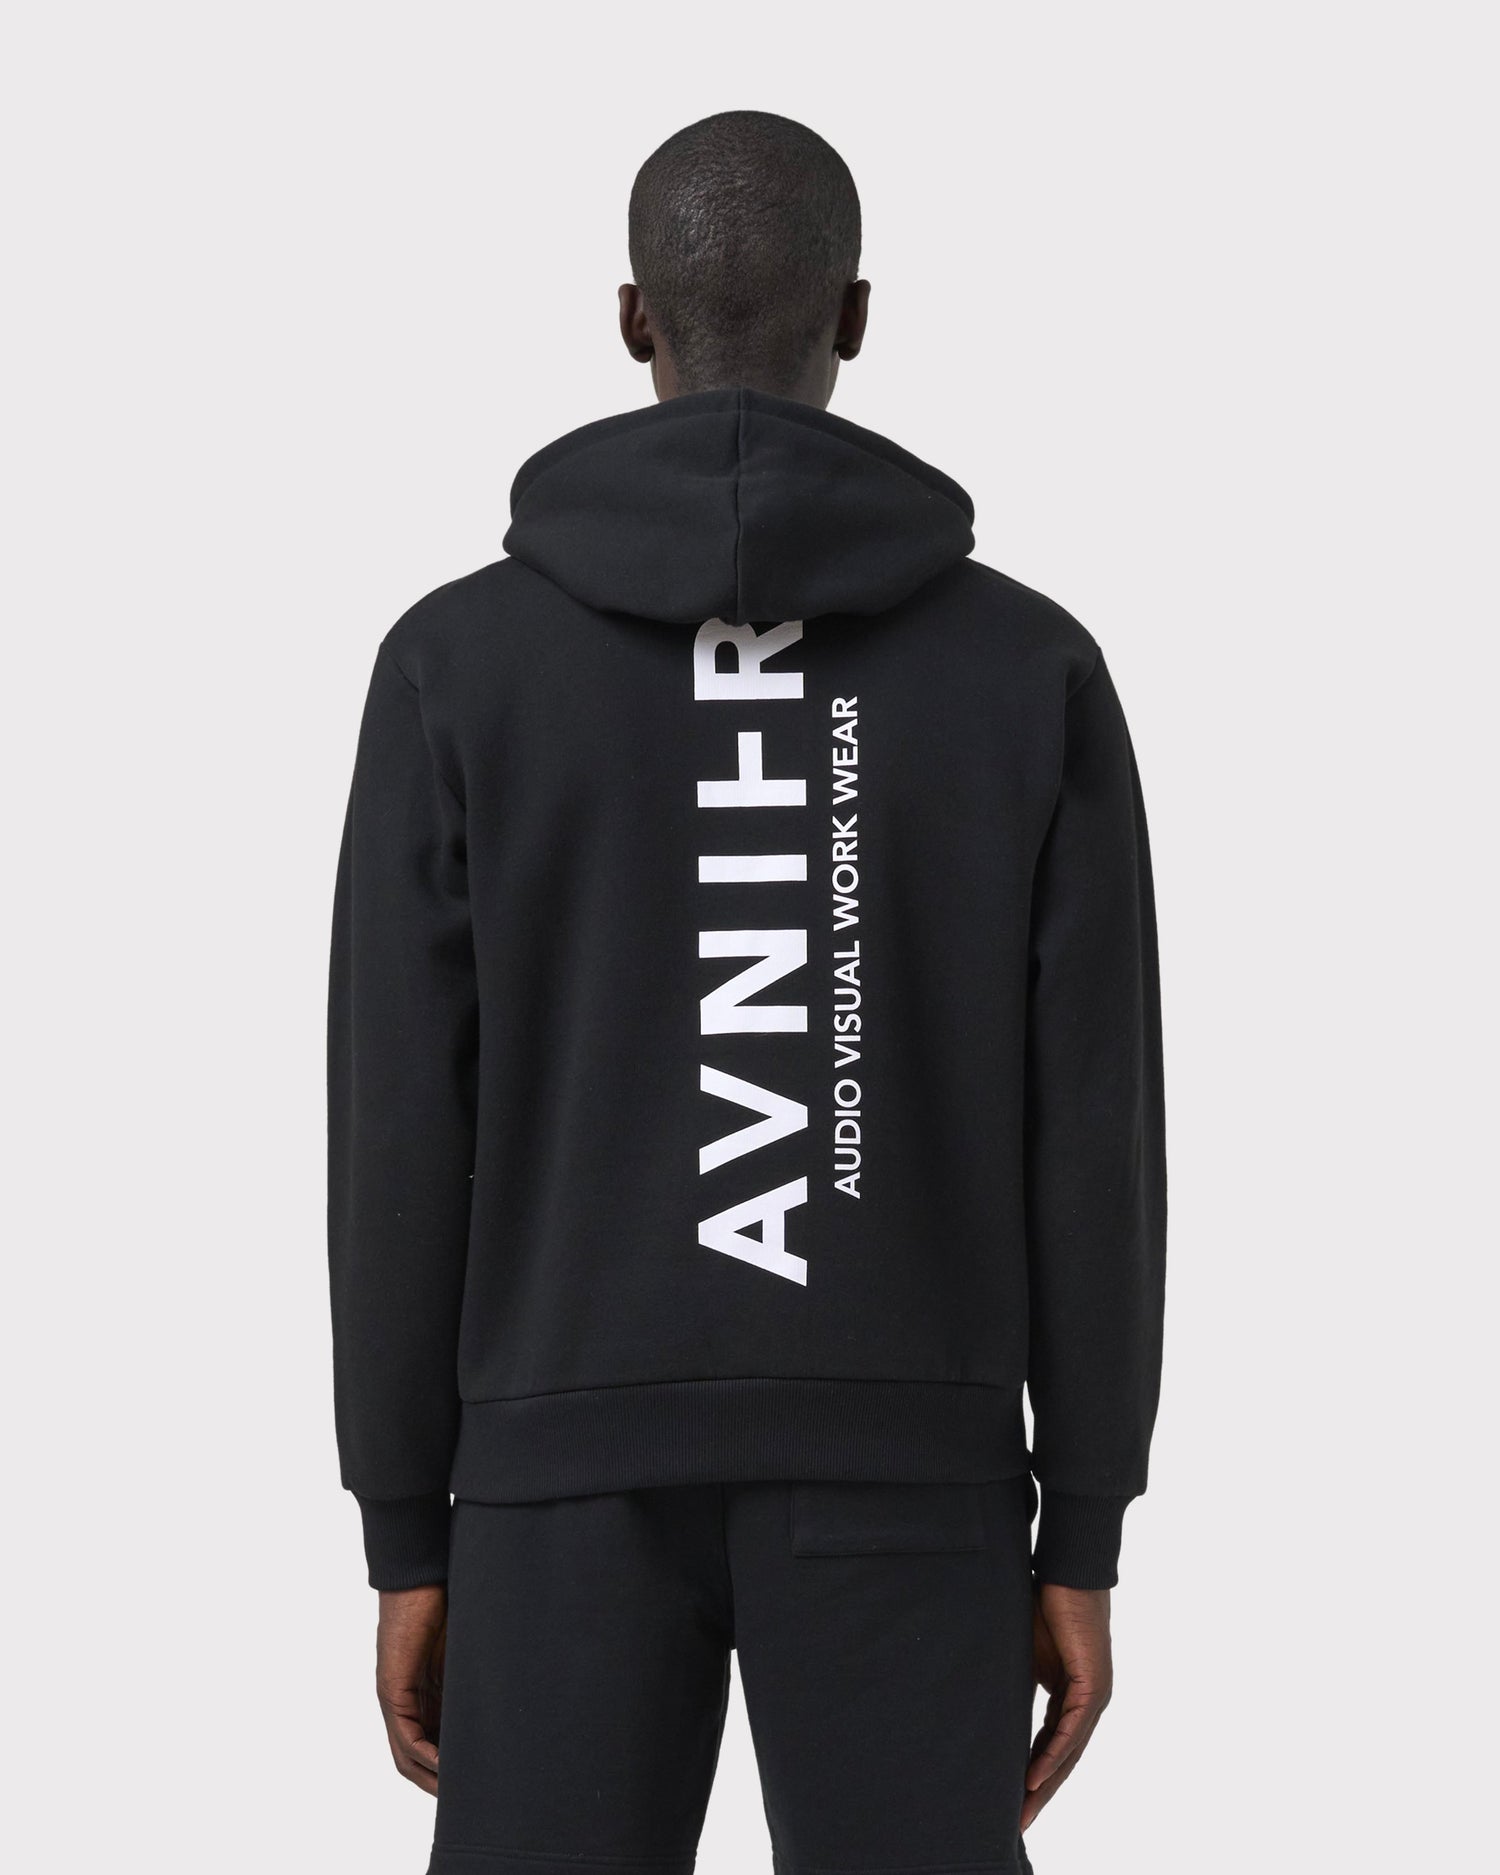 hoodie-onset-black-vertical-v3-avnier-durable-4-silhouette-dos - noir